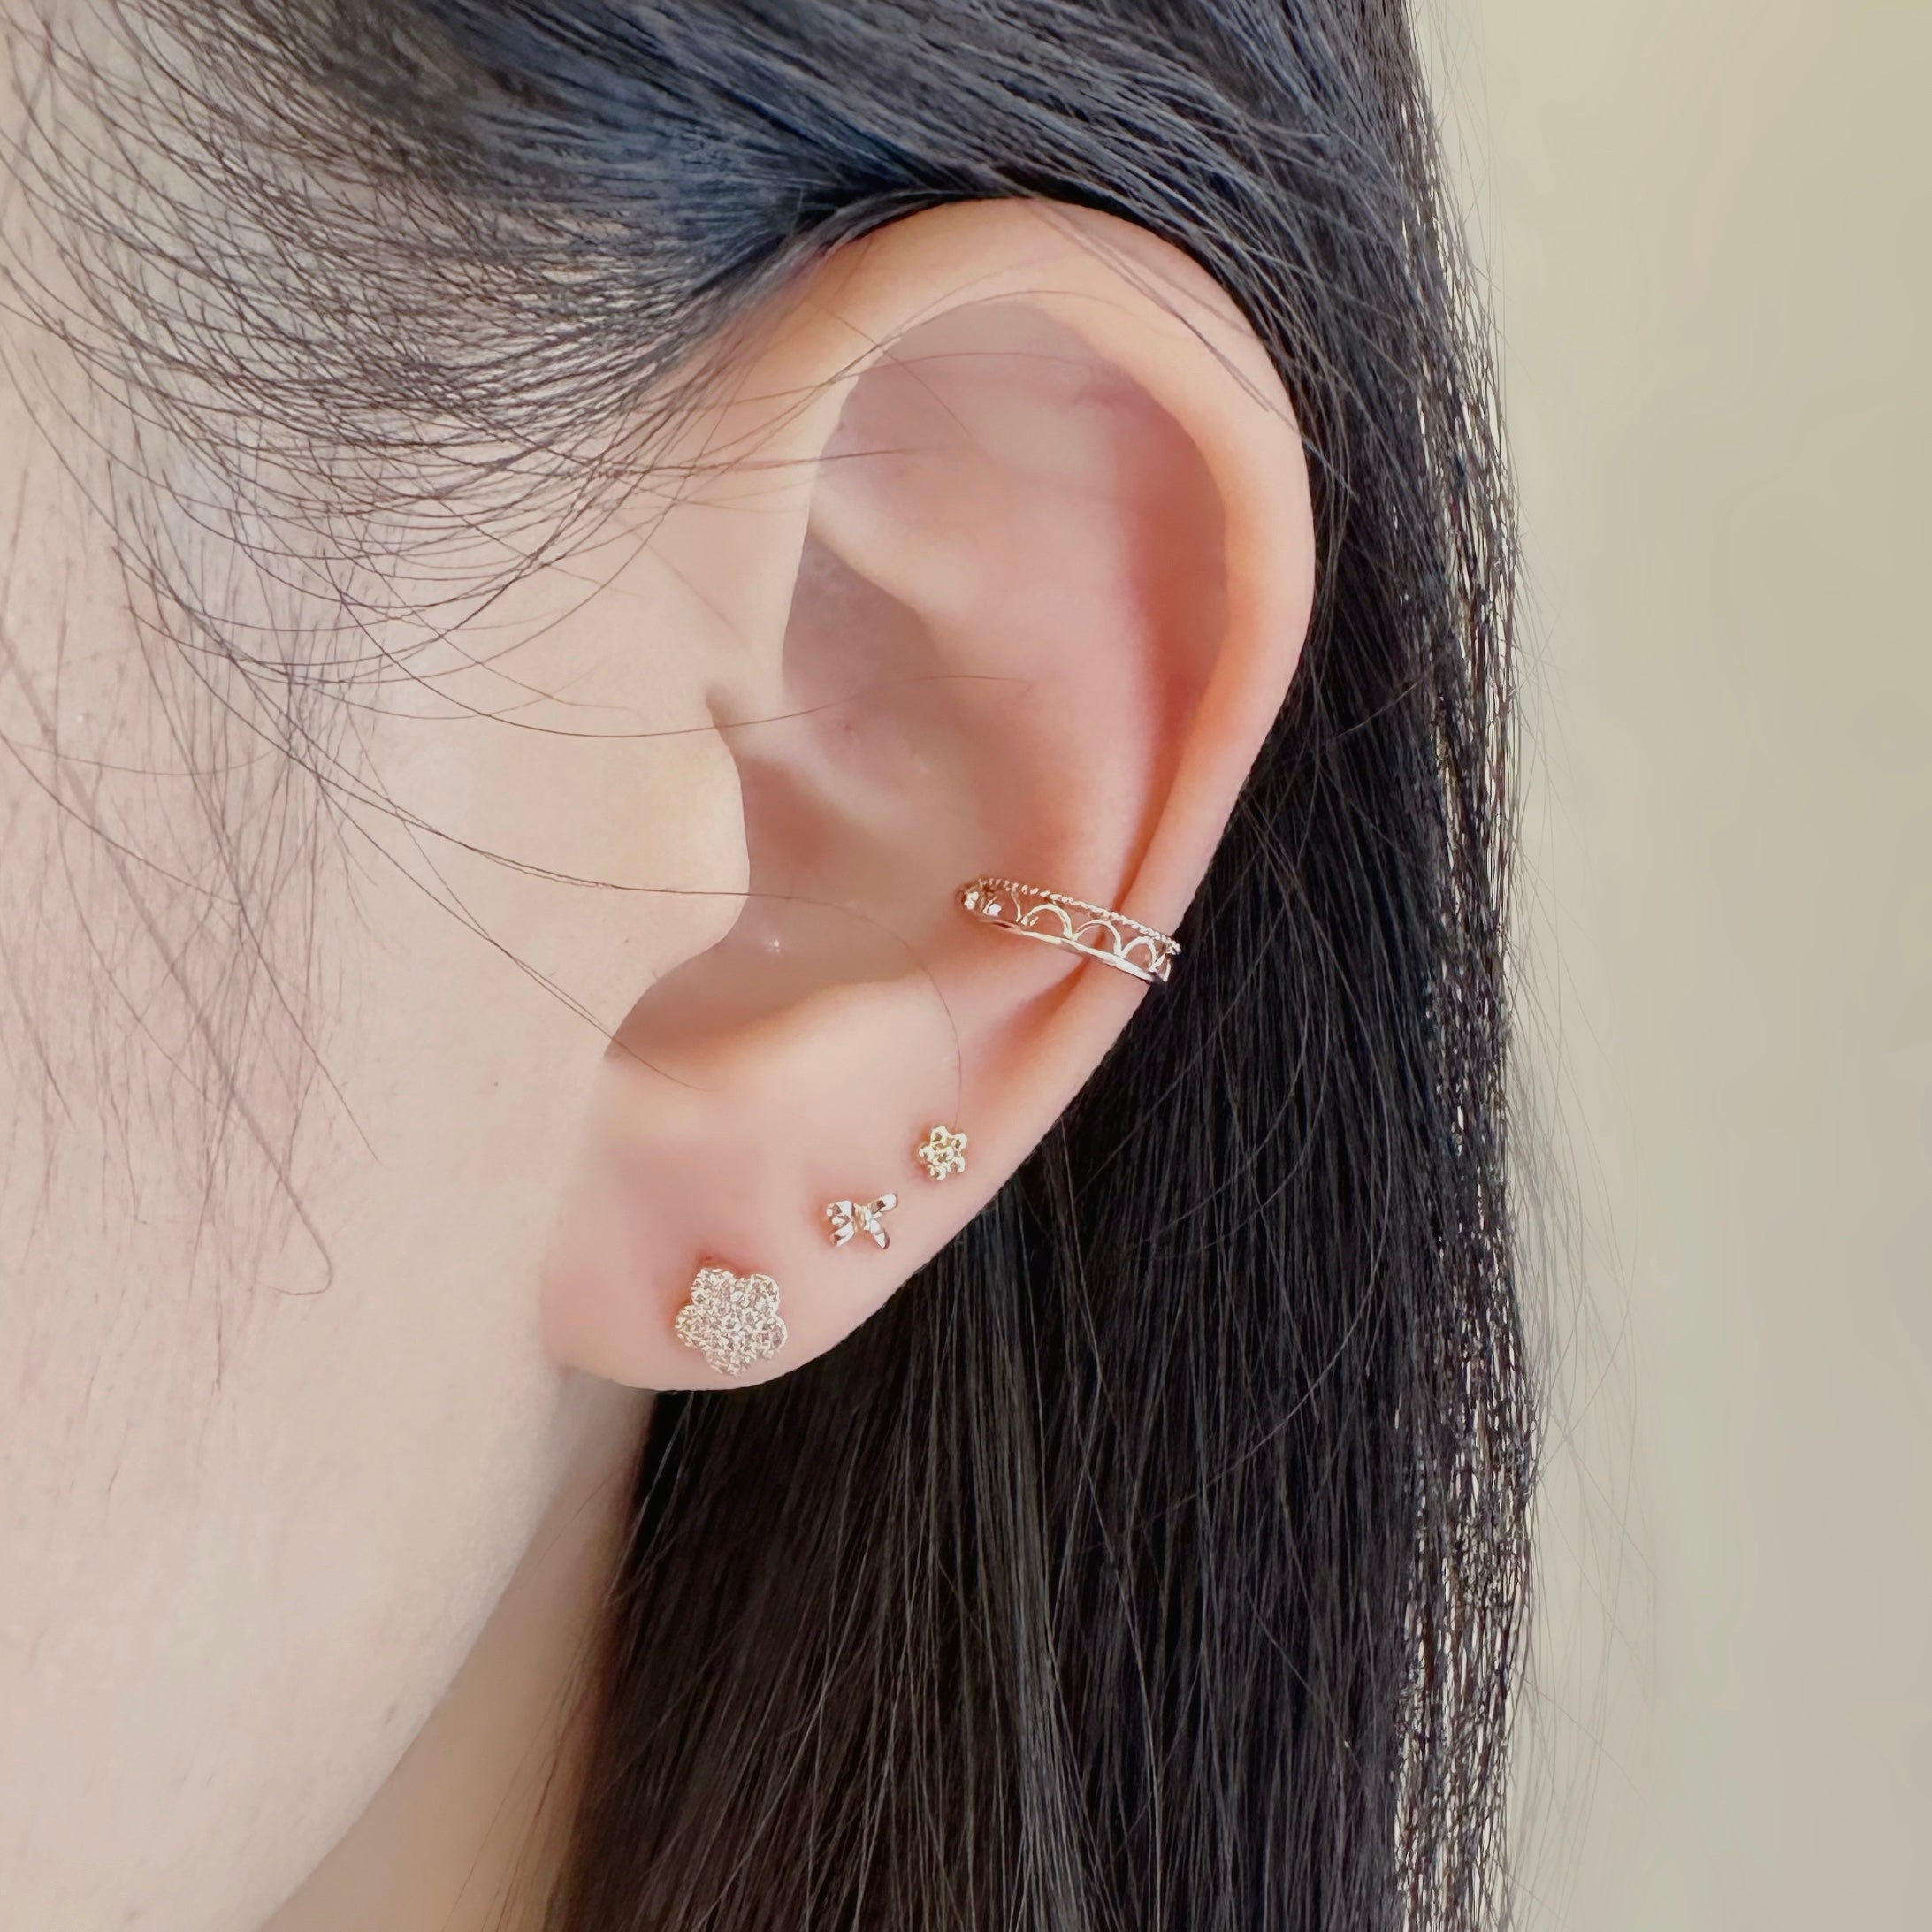 Mini Ribbon Earrings | Made in Korea | Dainty Jewellery – Aurelia Atelier